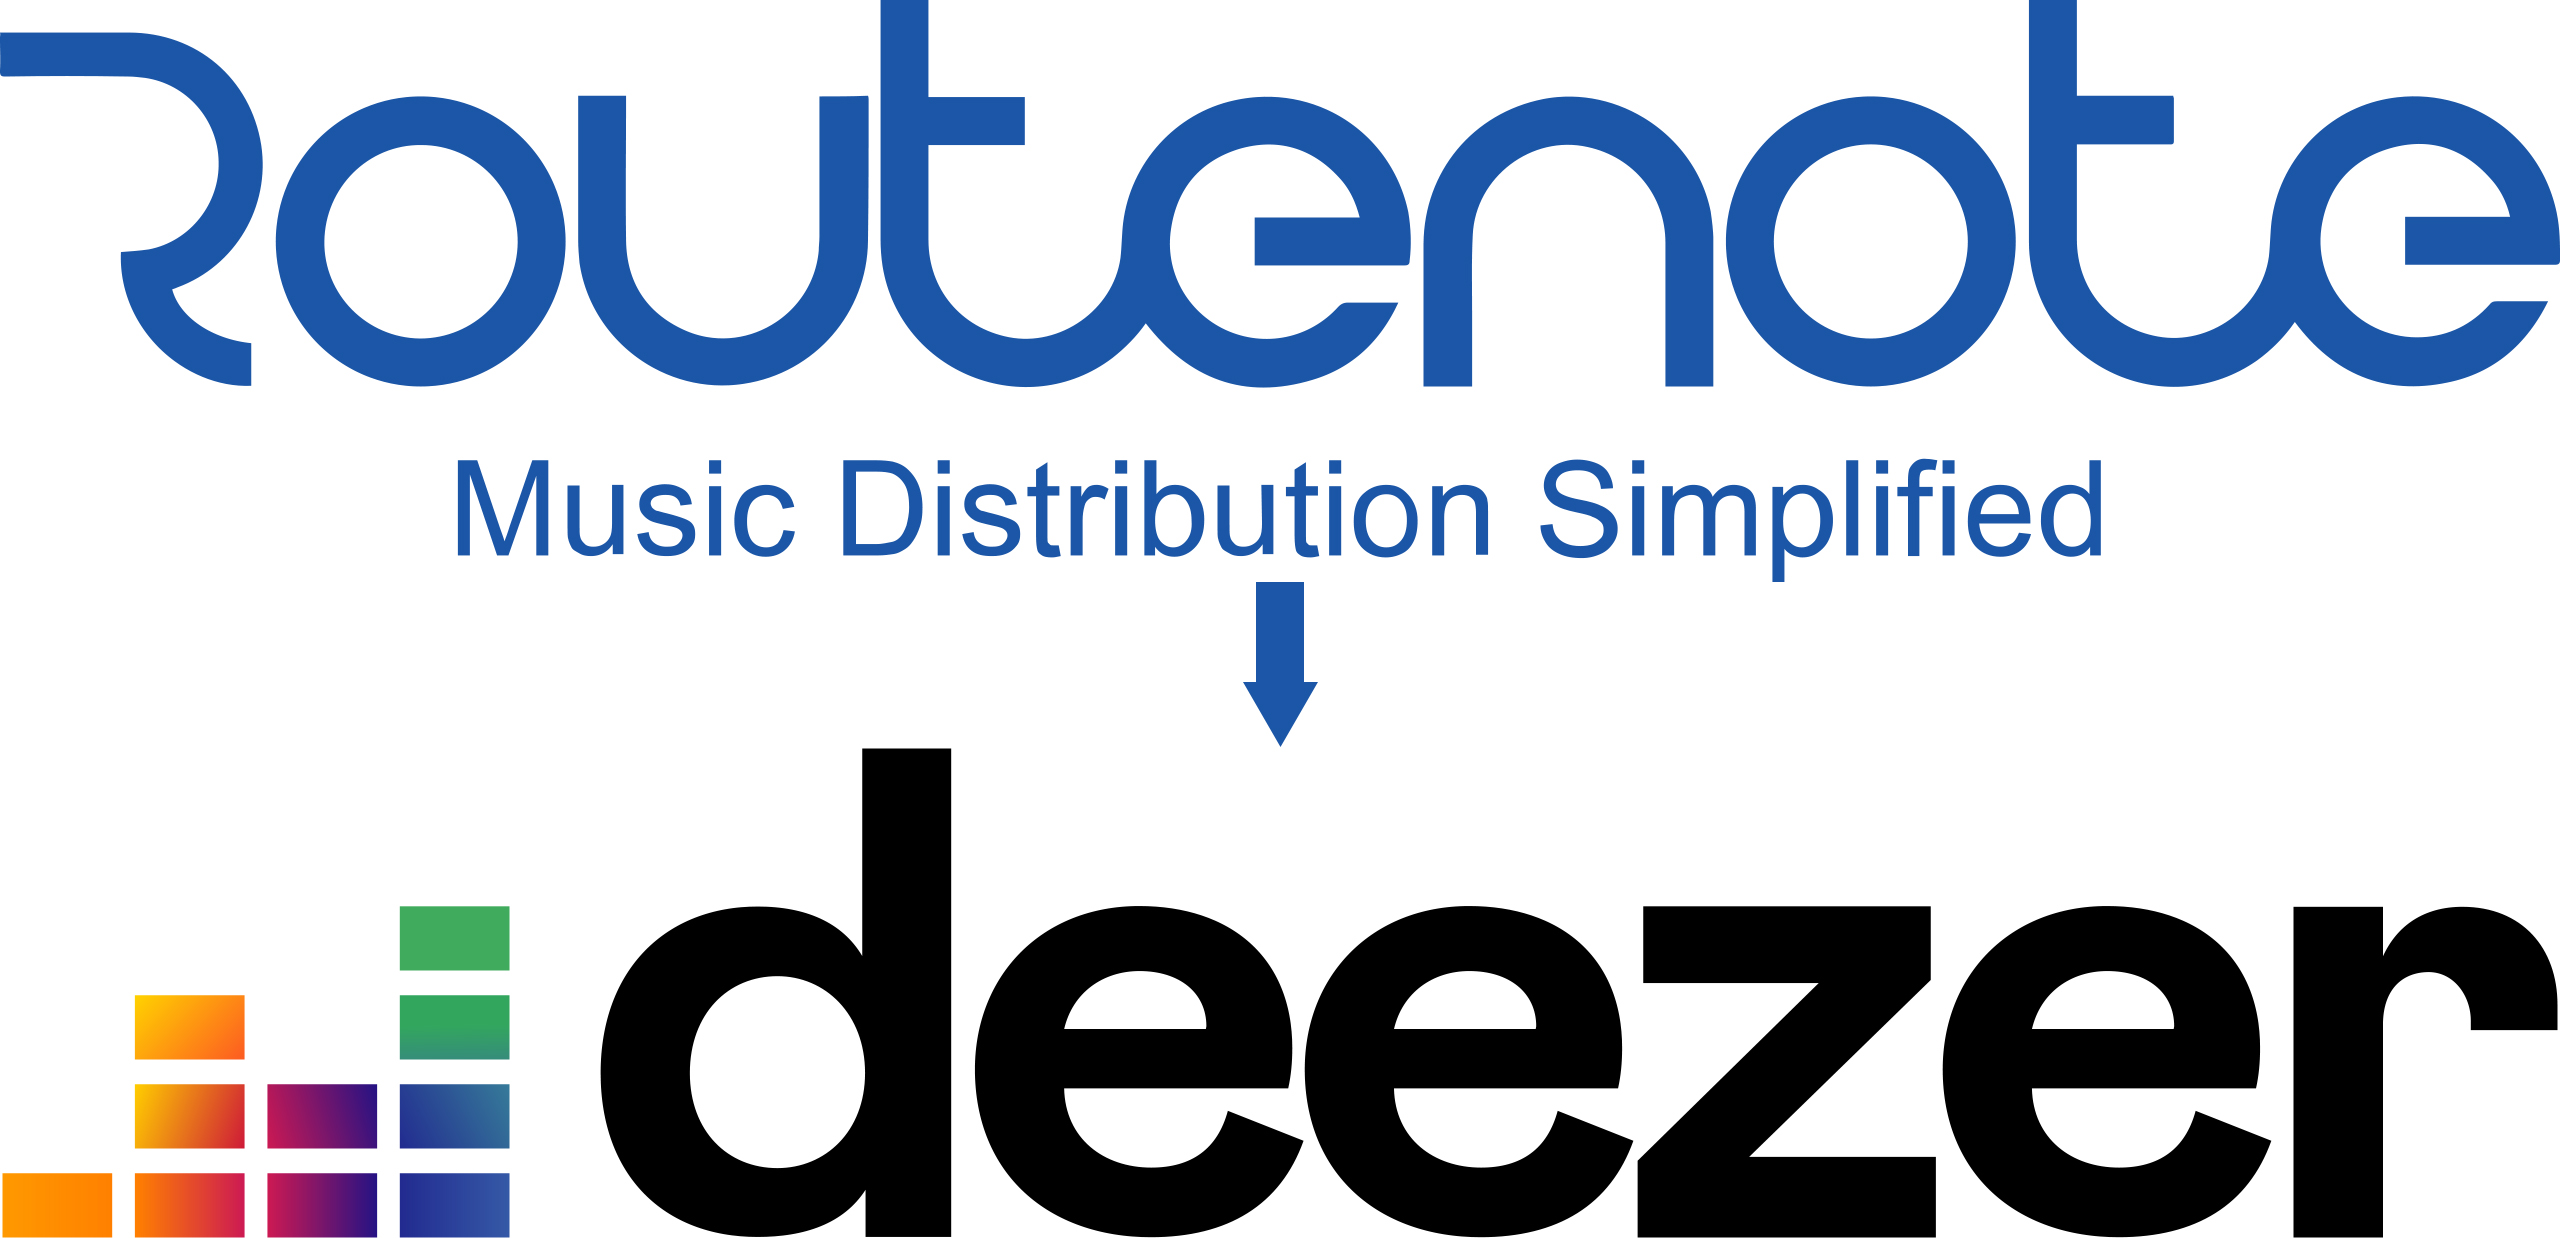 Does UnitedMasters distribute to Deezer?